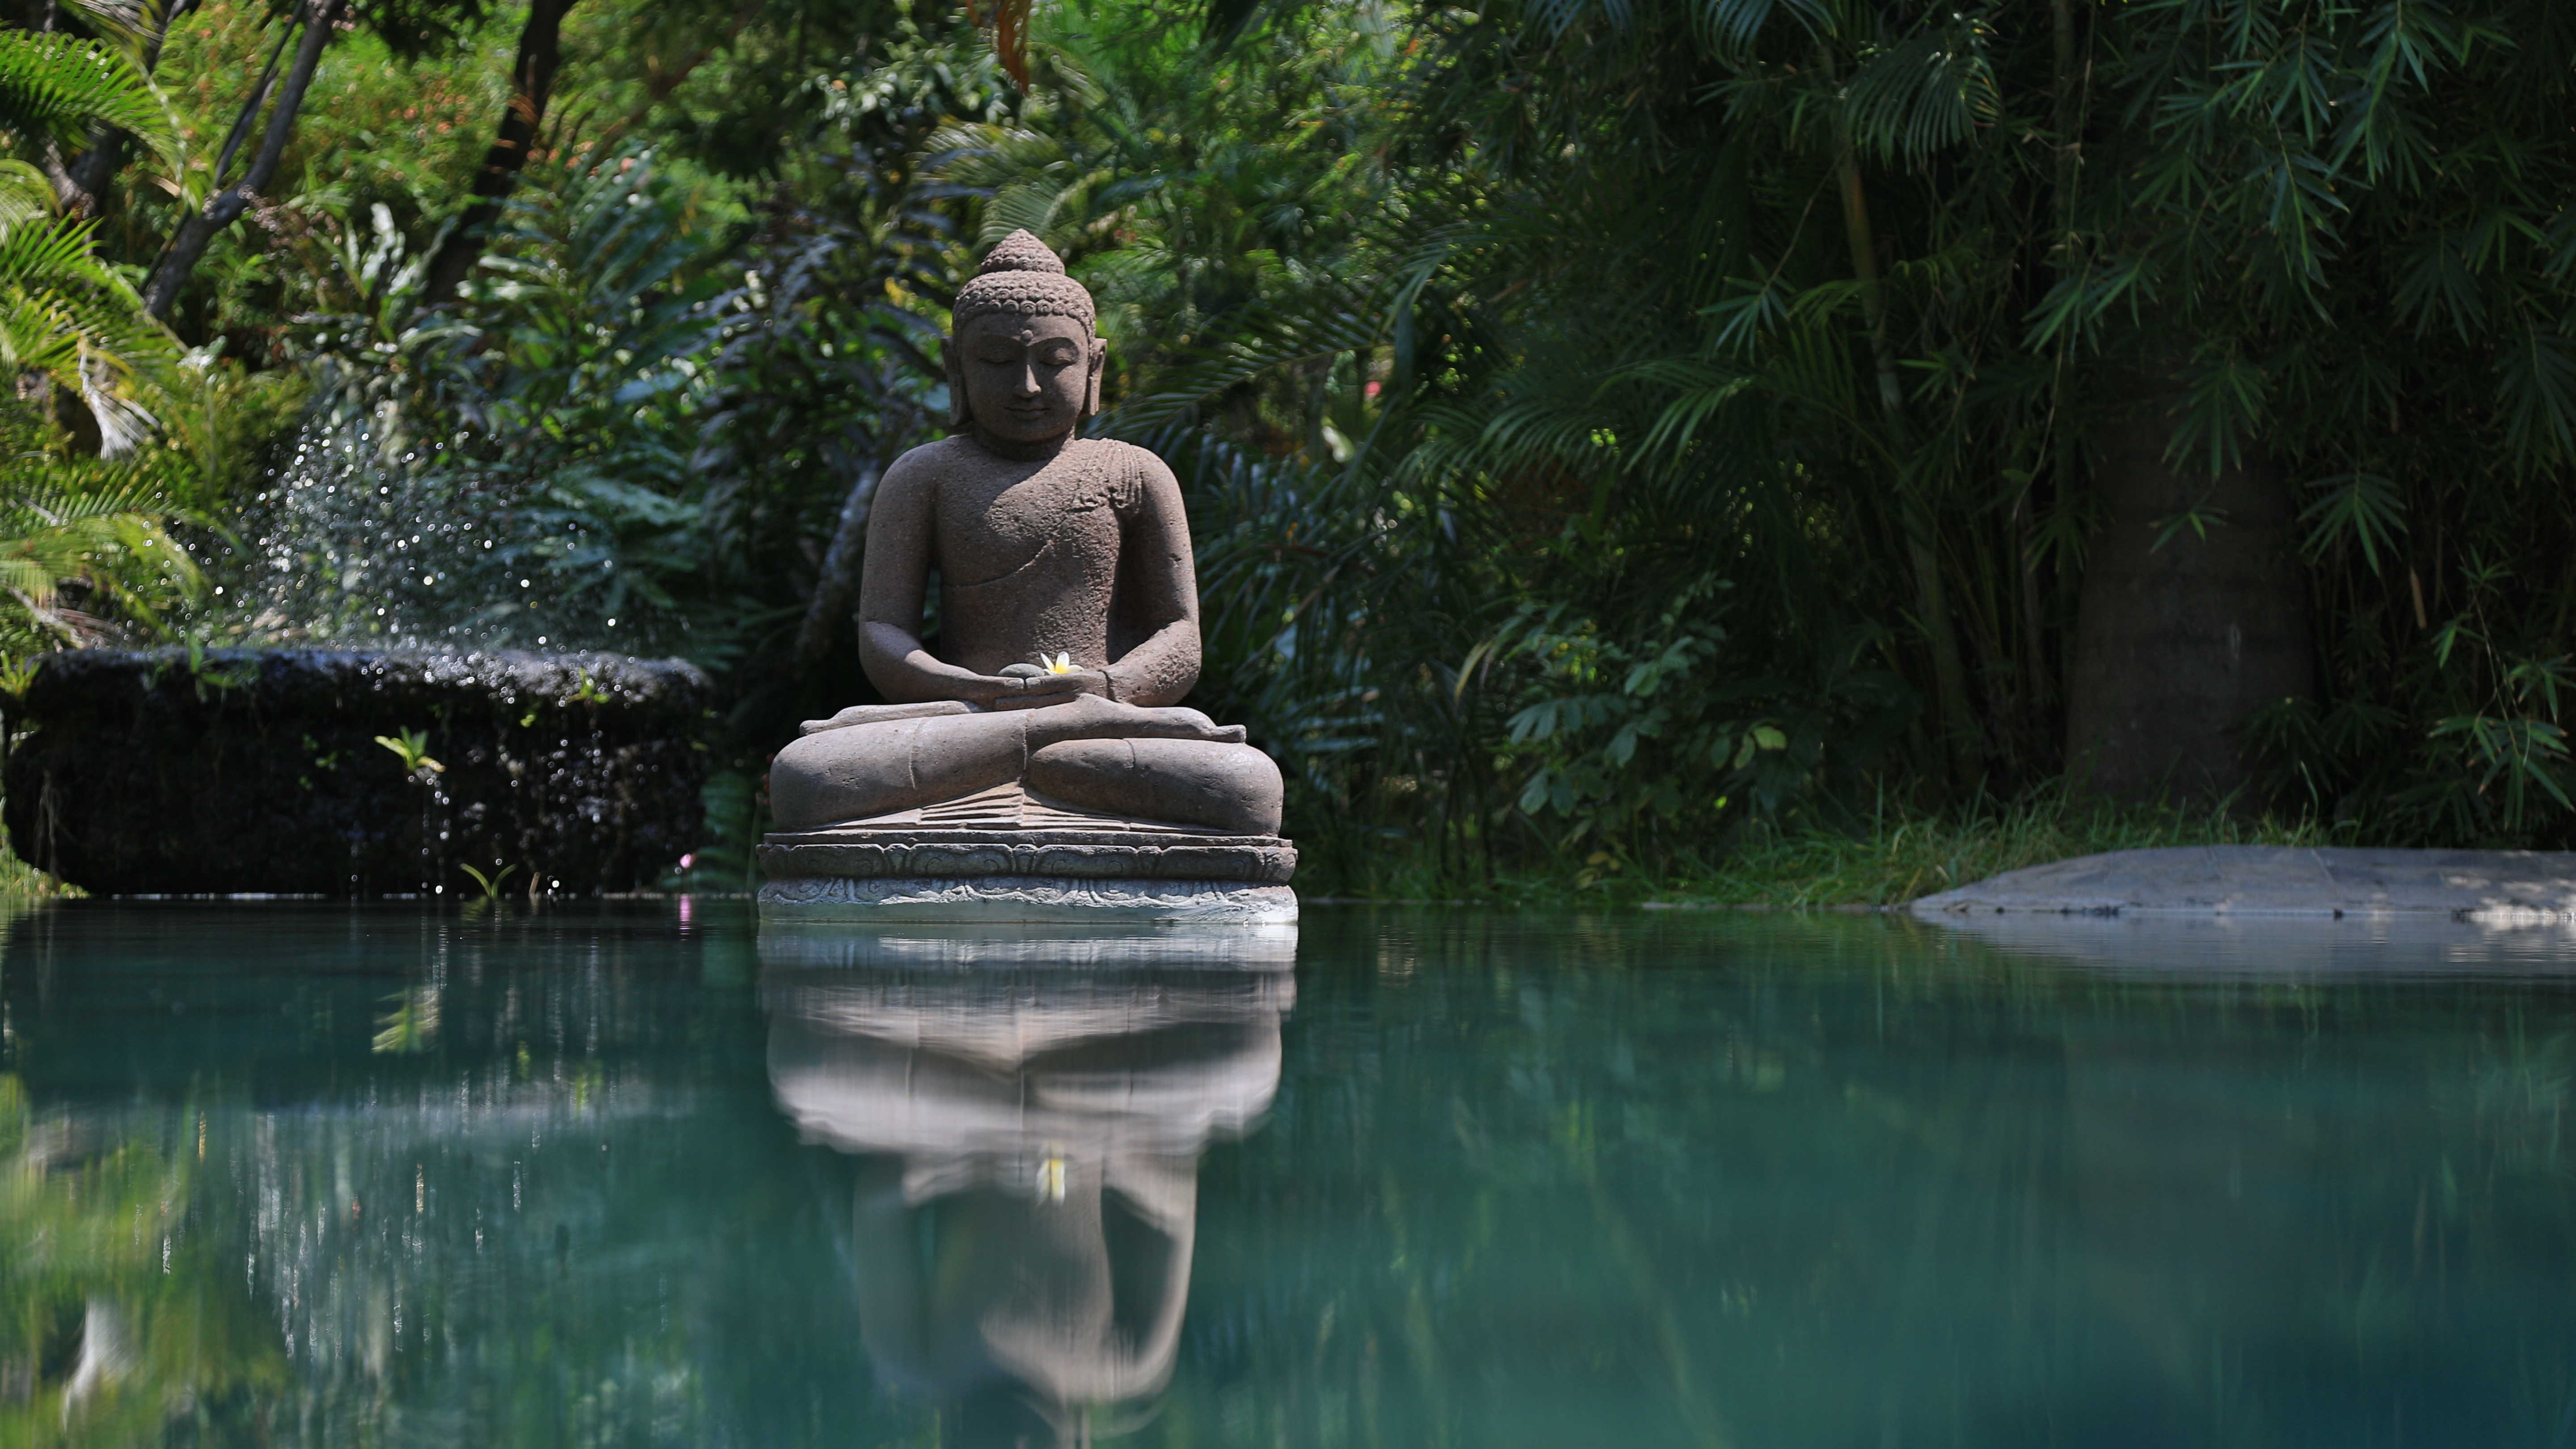 Bouddha et son reflet, le calme d'un temple balinais